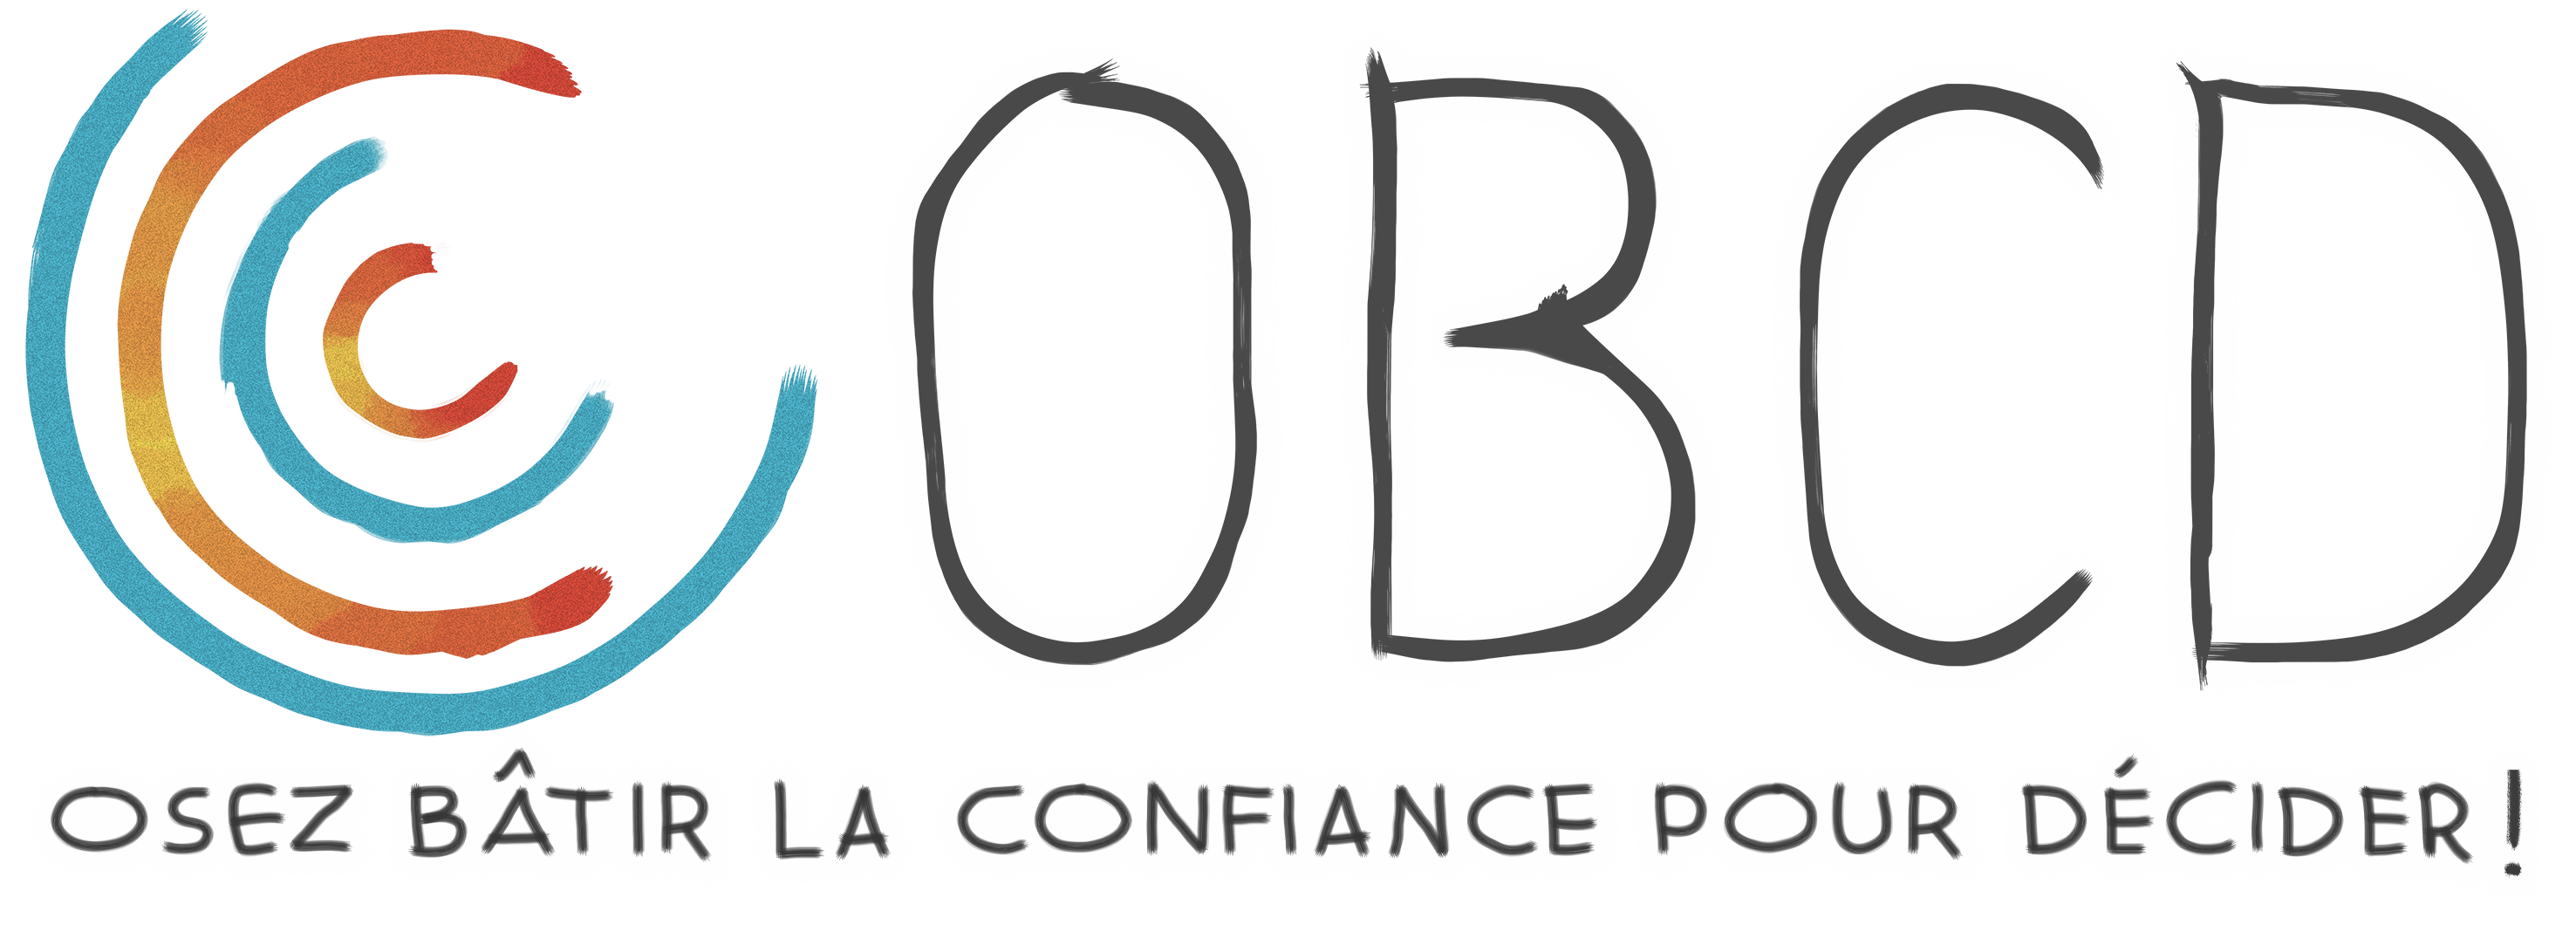 Logo OBCD